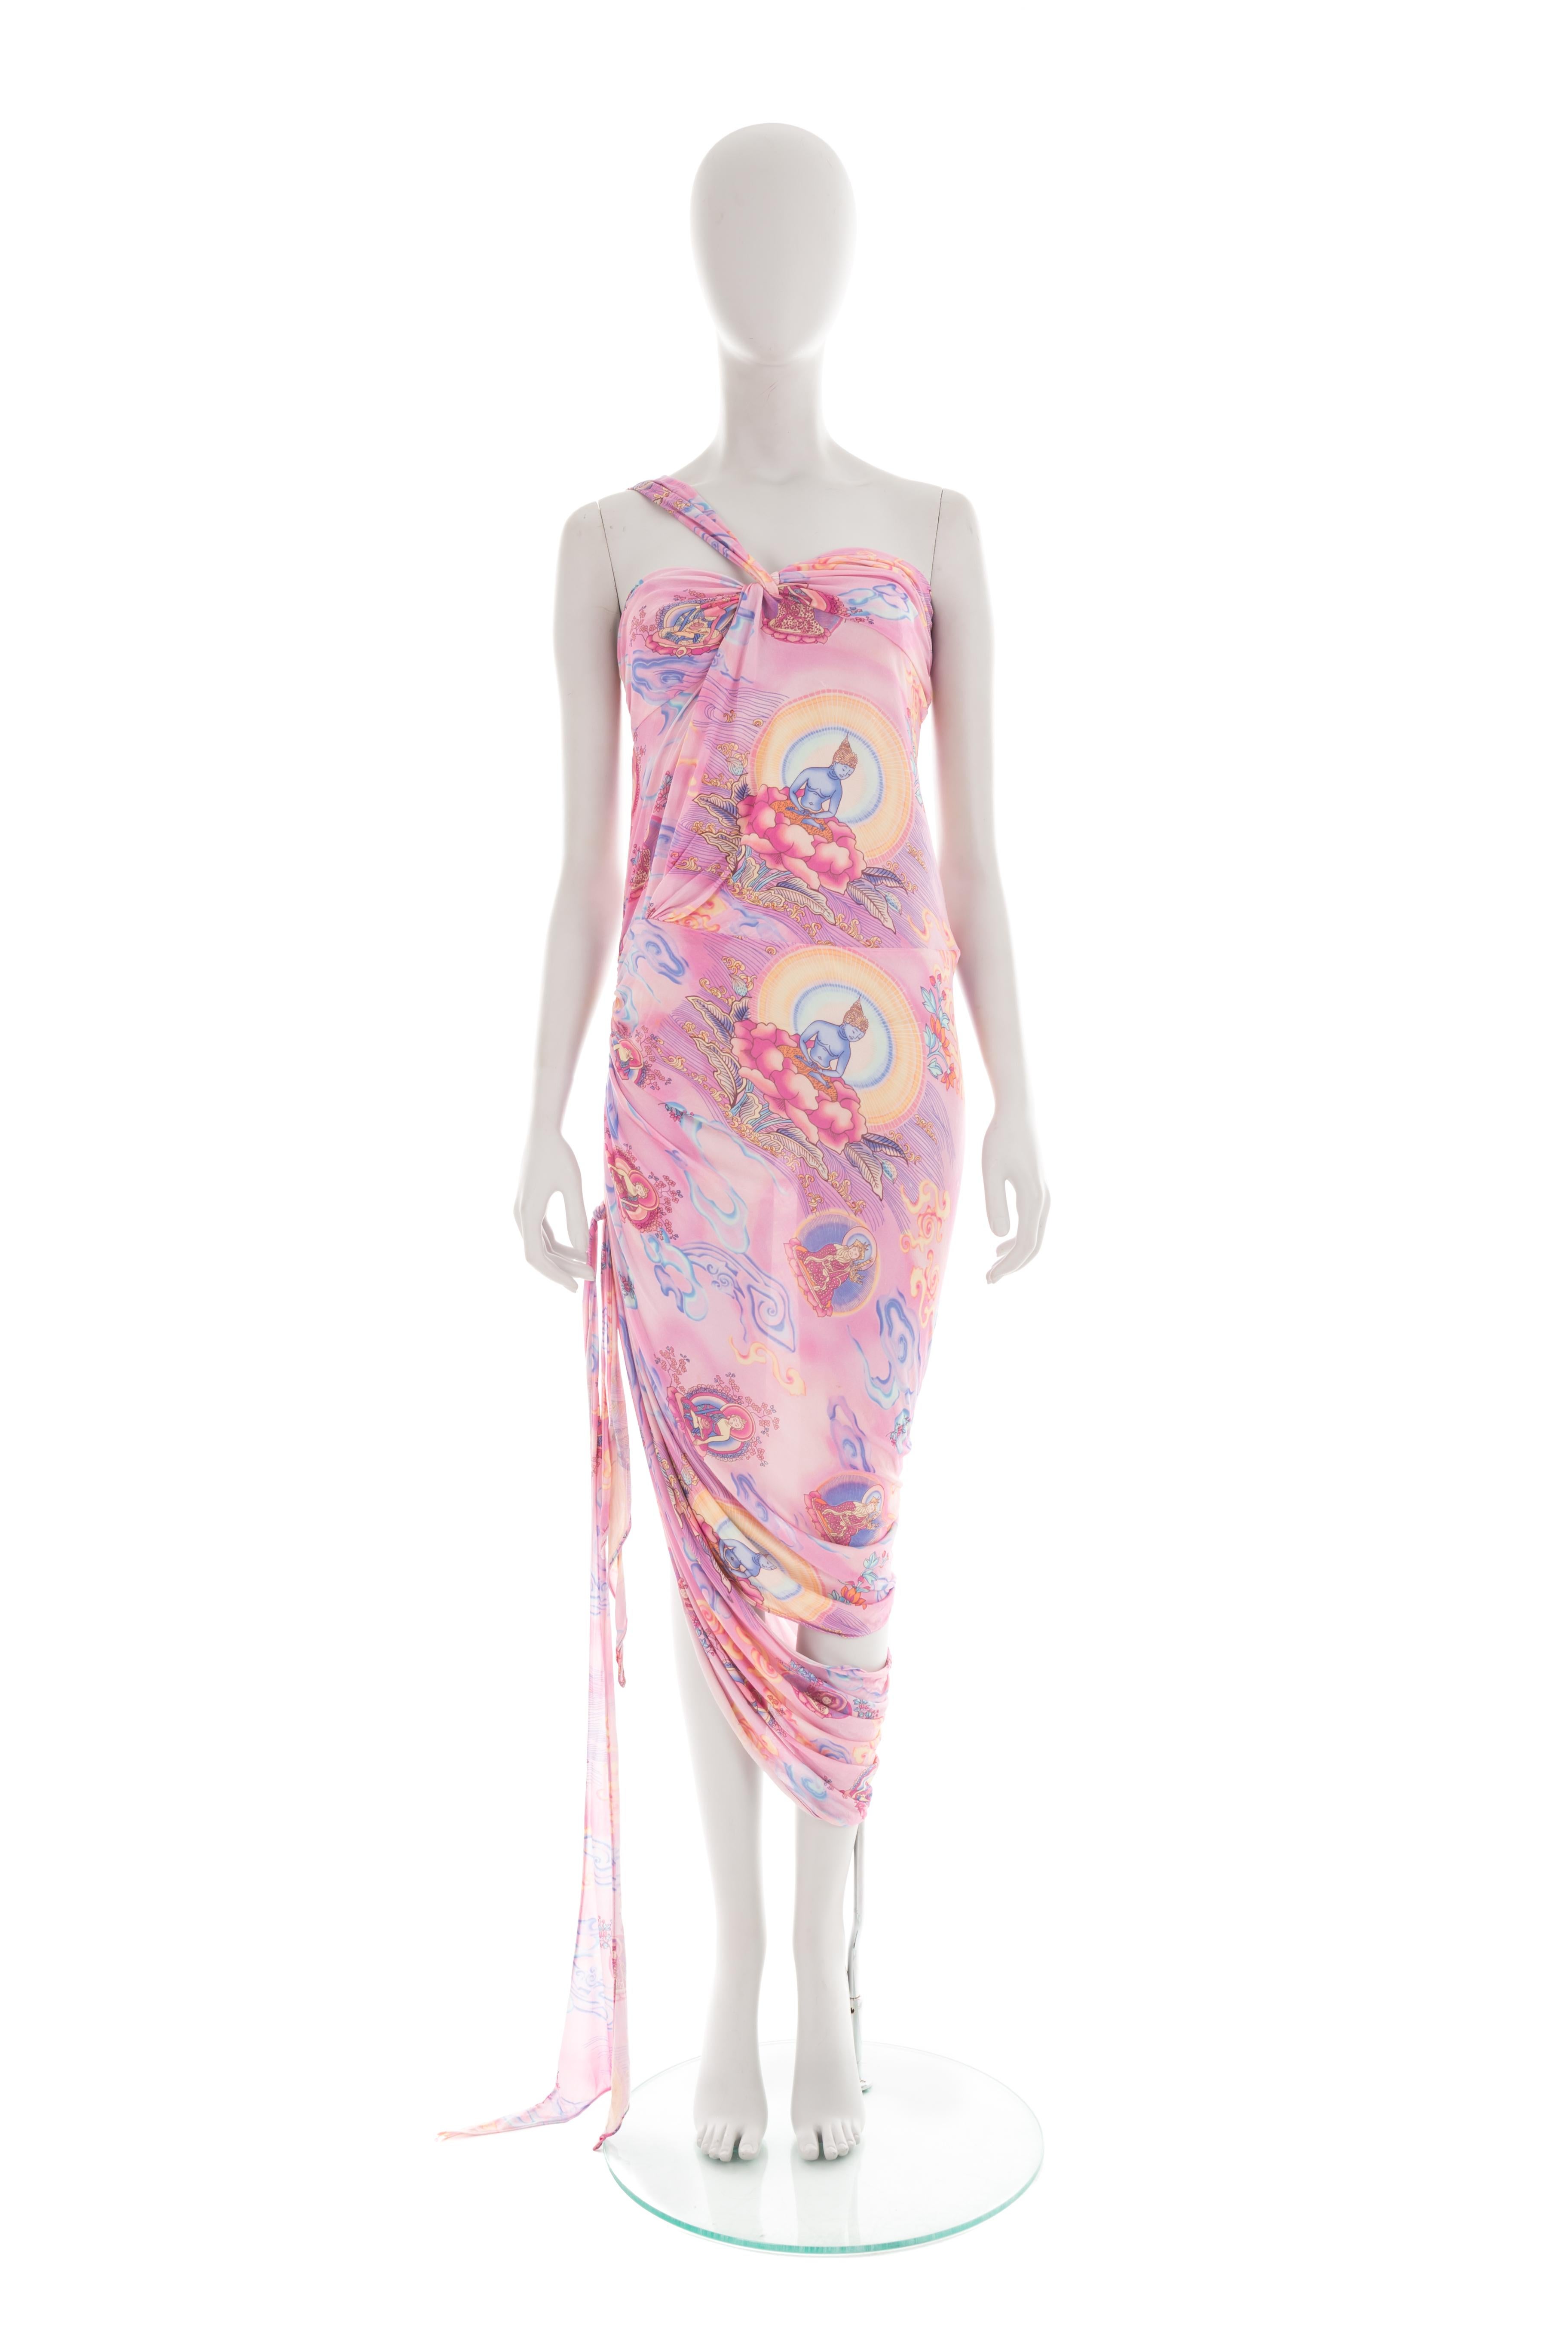 - Emanuel Ungaro by Giambattista Valli 
- Kollektion Frühjahr-Sommer 2004
- Verkauft von Gold Palms Vintage
- Drapiertes Kleid aus rosa Viskose
- Druck 